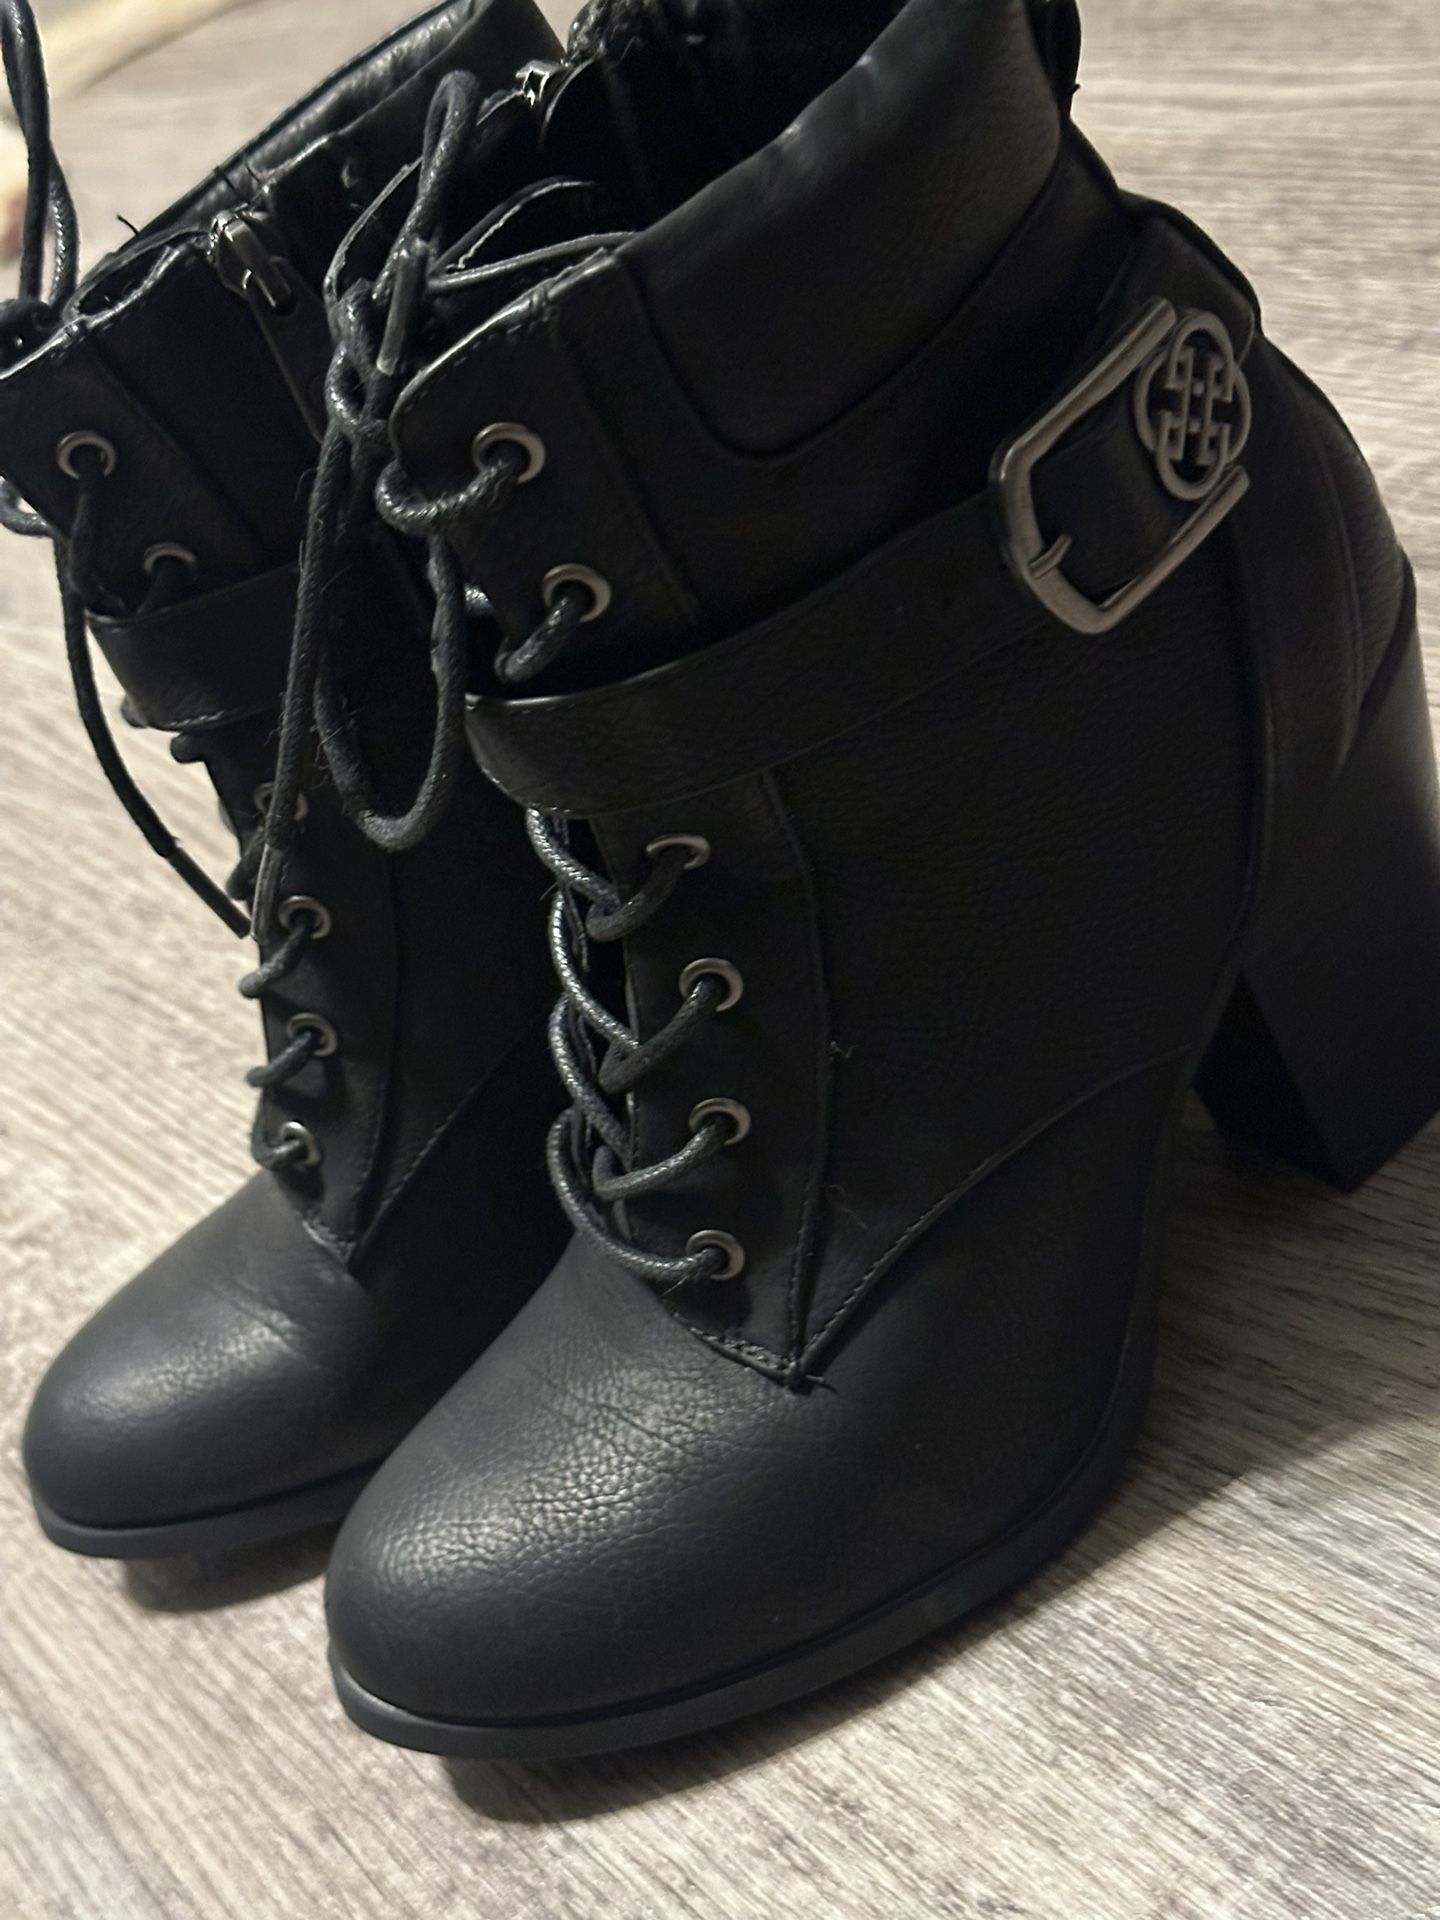 Women's Black Boots/Booties